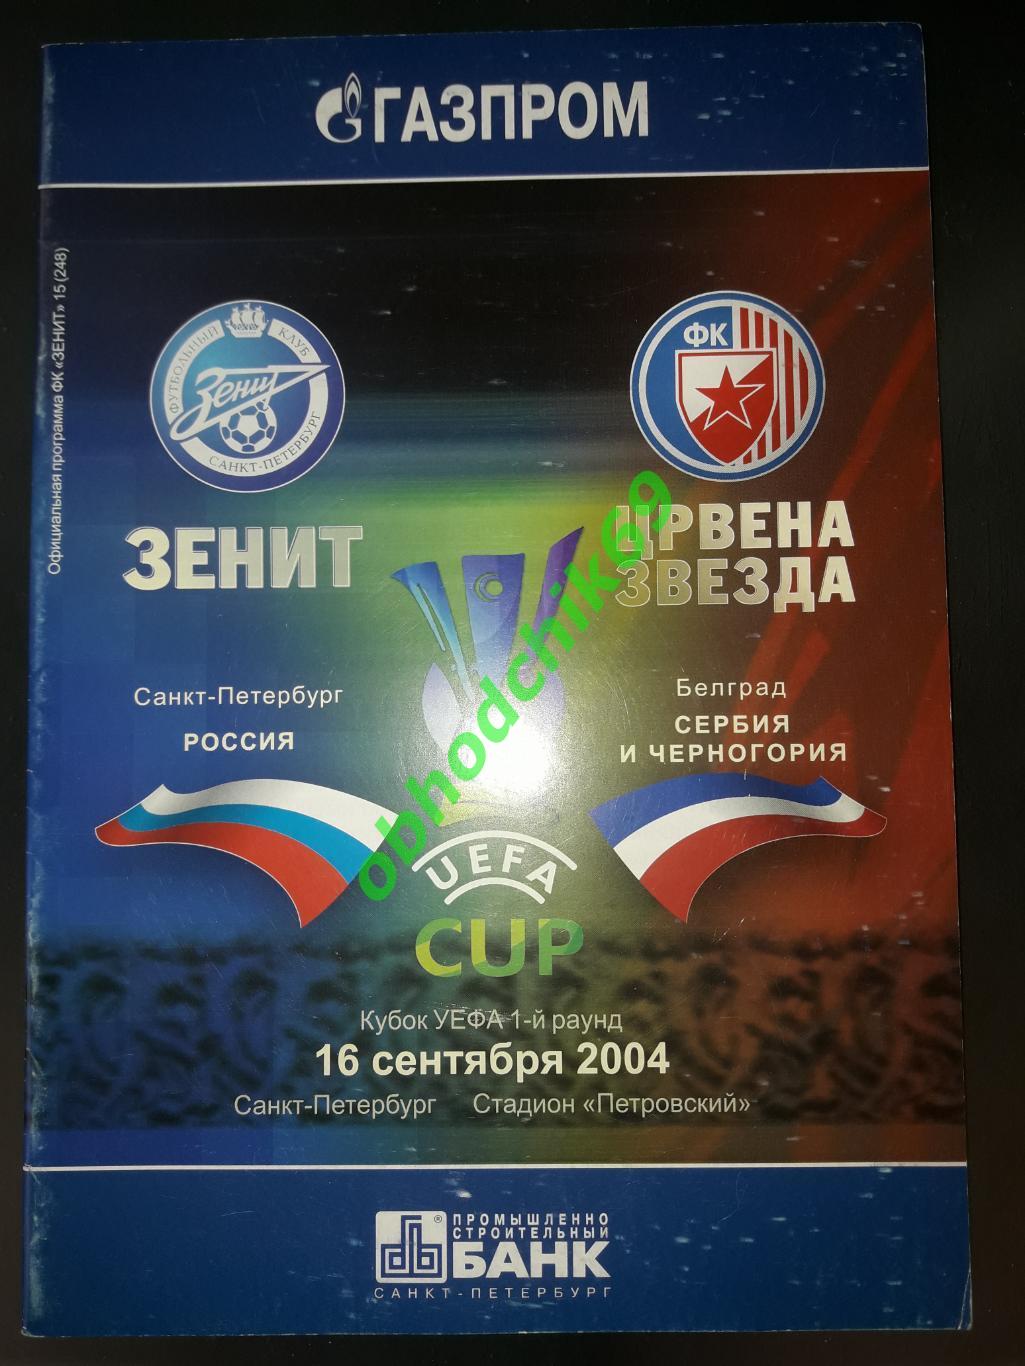 Зенит (С-Пб) - Црвена Звезда (Сербия и Черногория) 16 09 2004 Кубок УЕФА